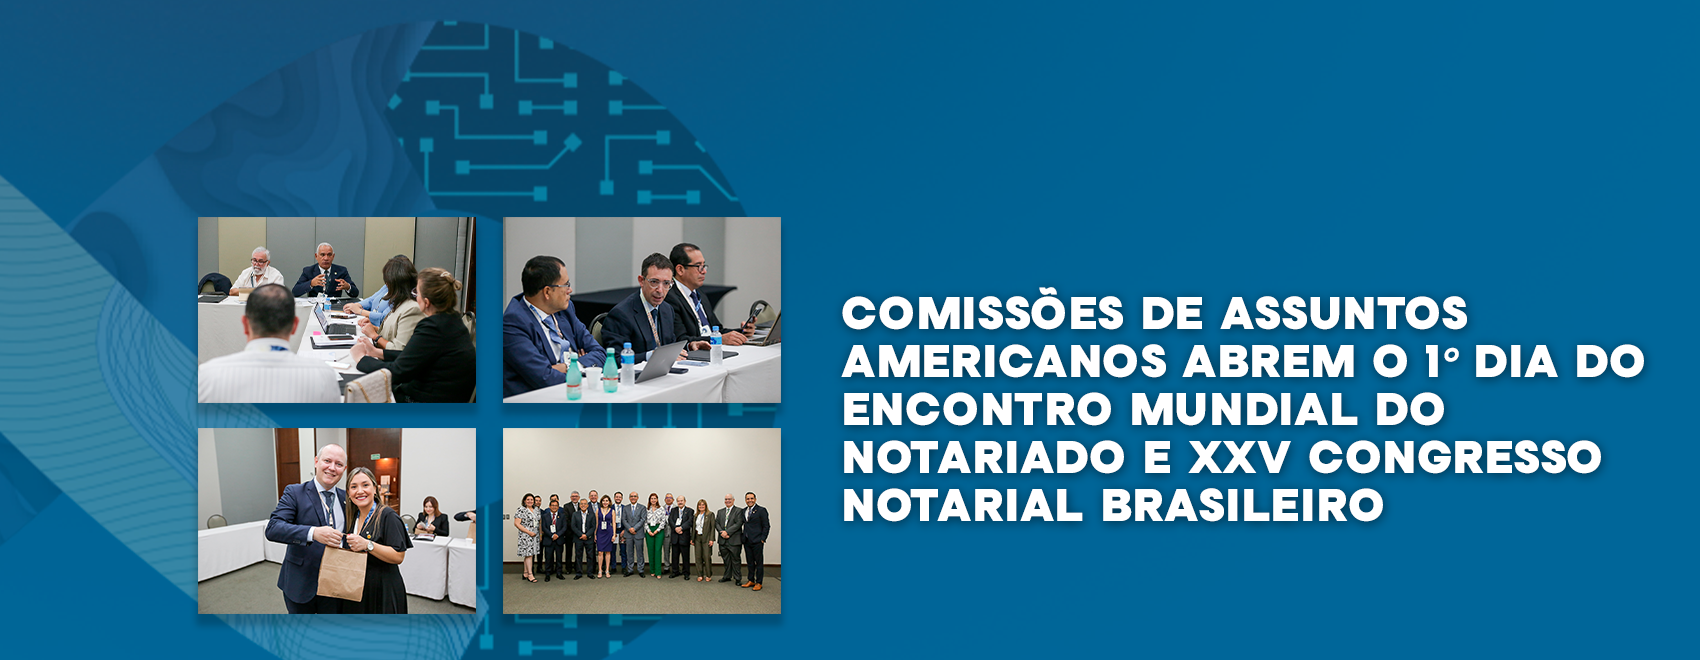 Comissões De Assuntos Americanos Abrem O 1º Dia Do Encontro Mundial Do Notariado E XXV Congresso Notarial Brasileiro